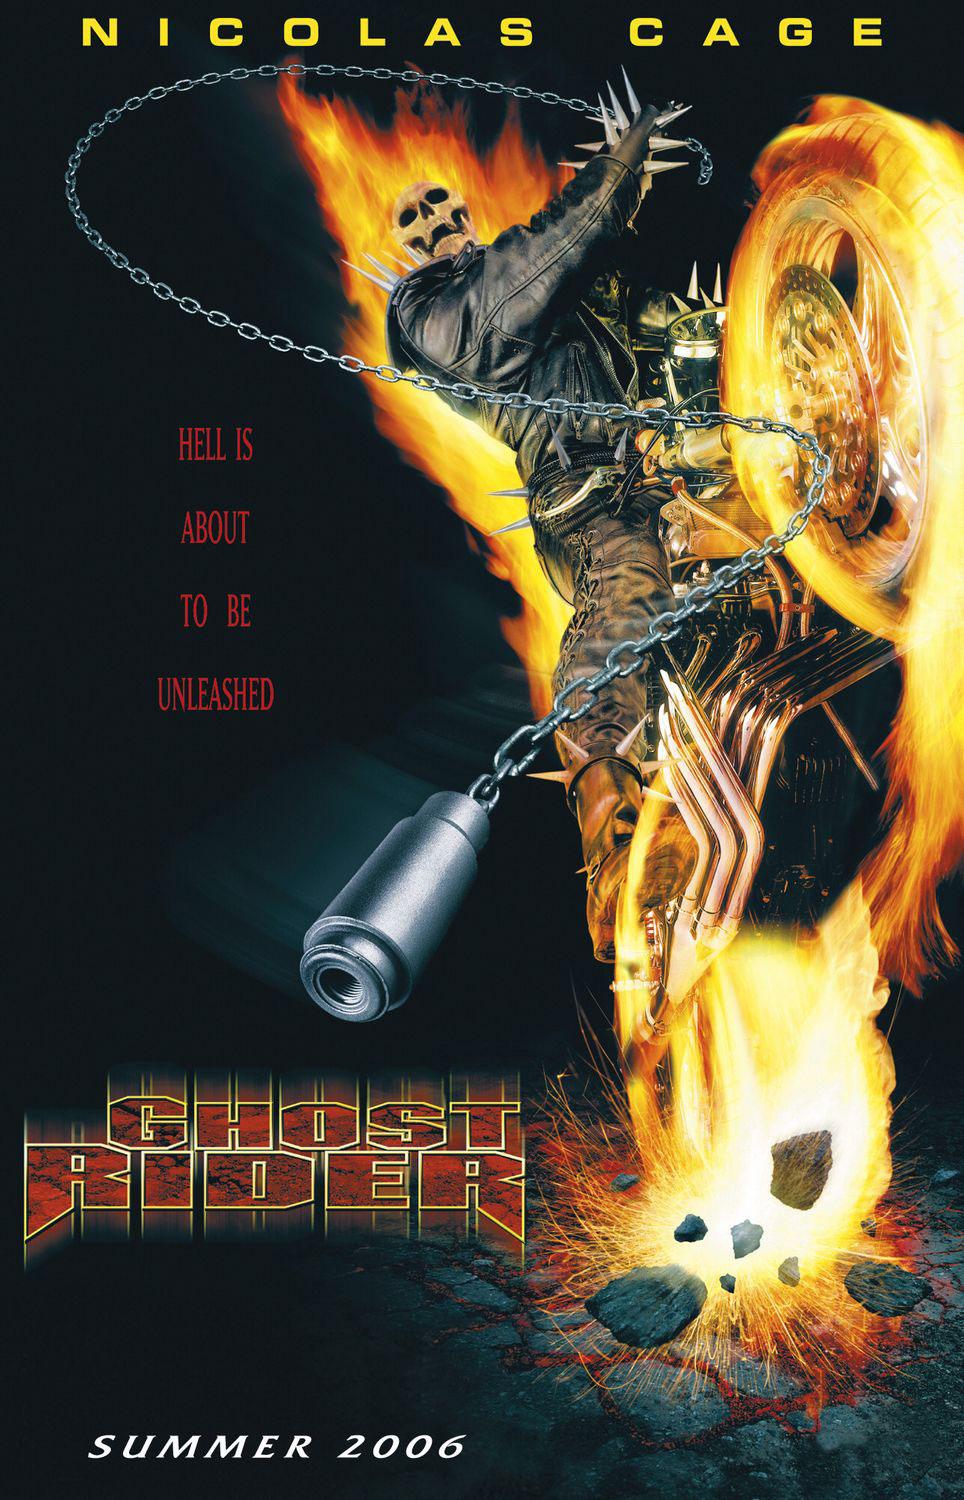 Постер фильма Призрачный гонщик | Ghost Rider